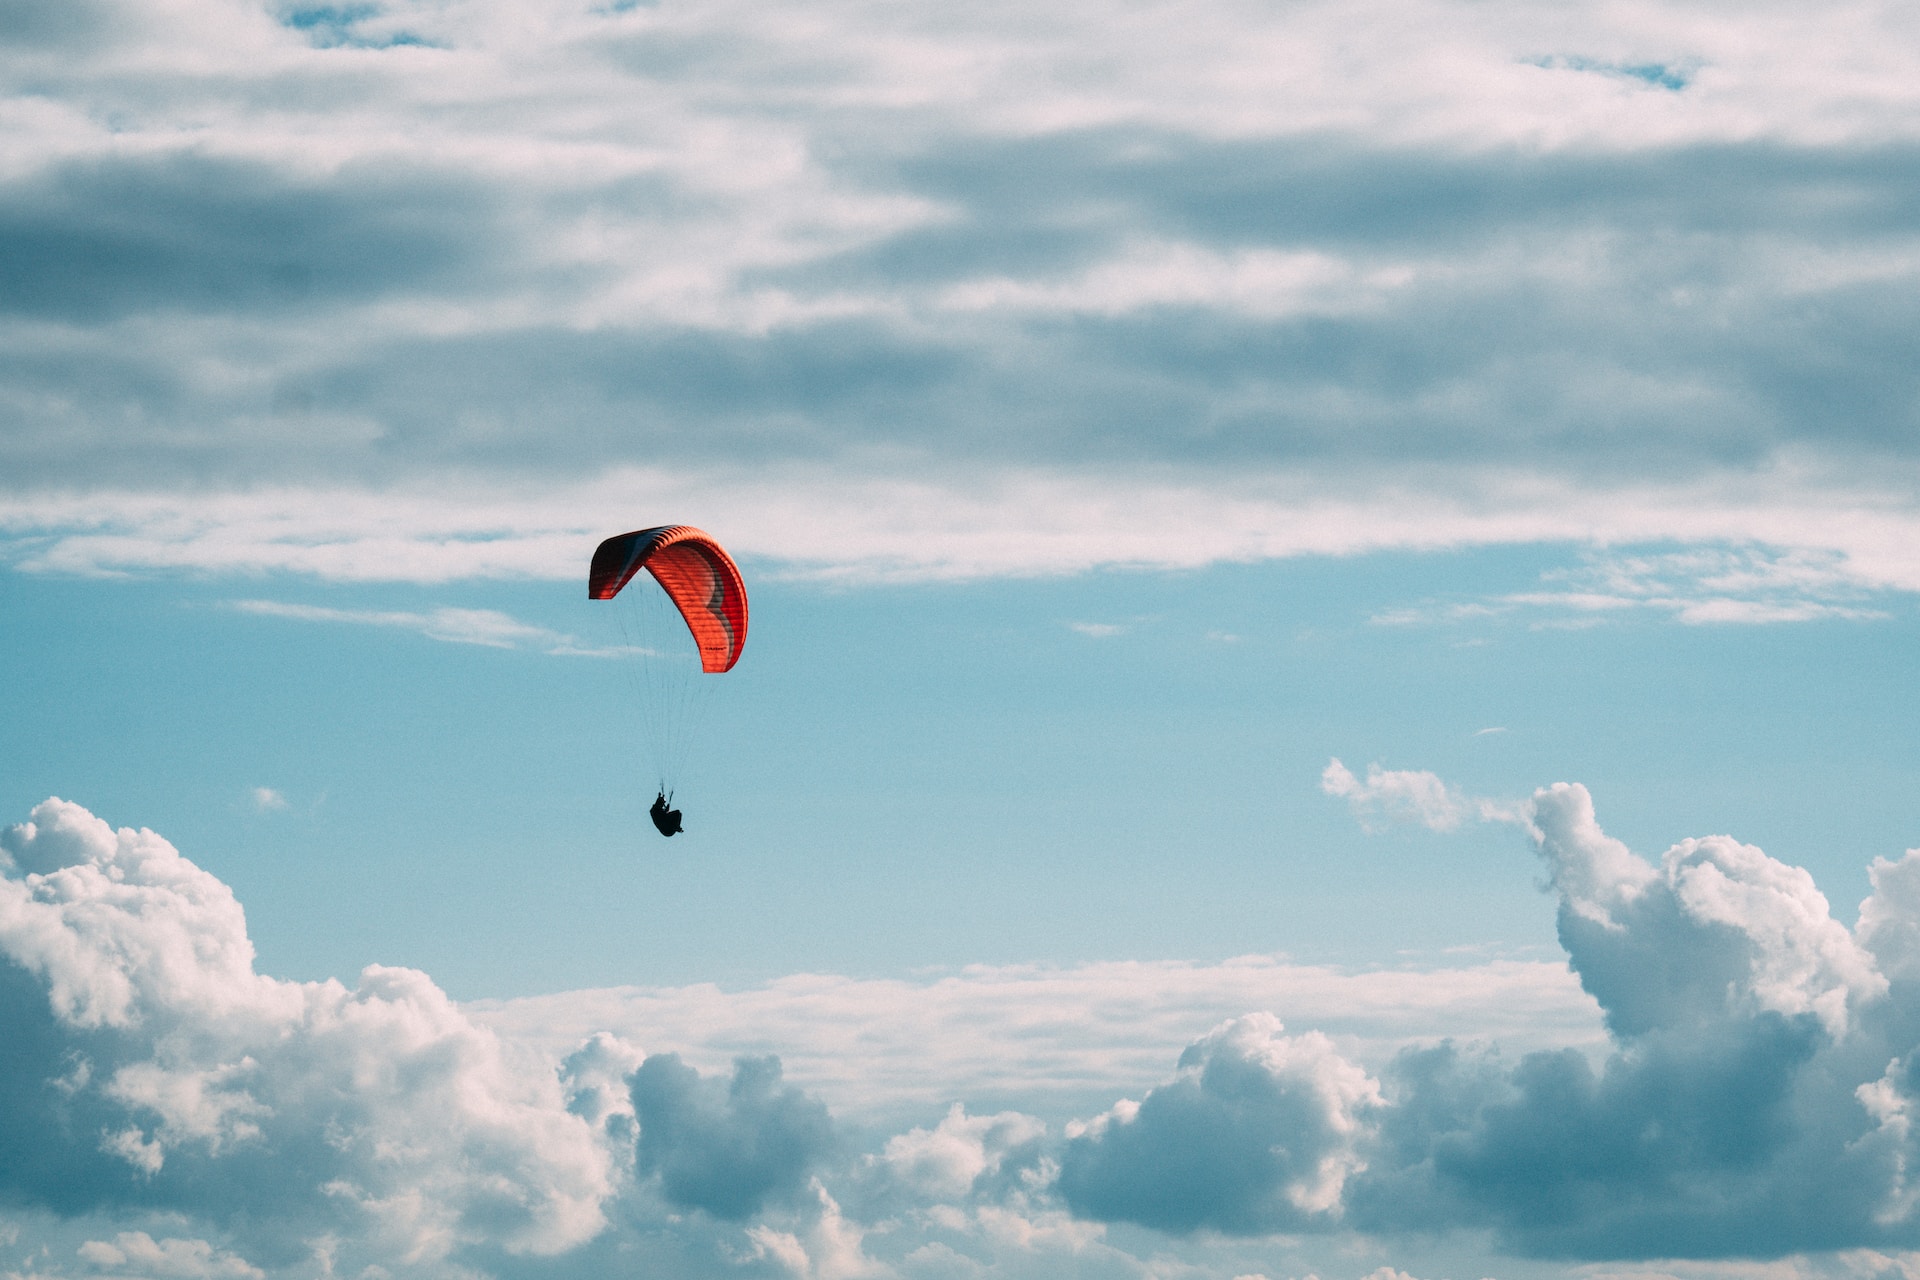 Les 6 meilleurs endroits pour sauter en parachute et survoler des panoramas extraordinaires !